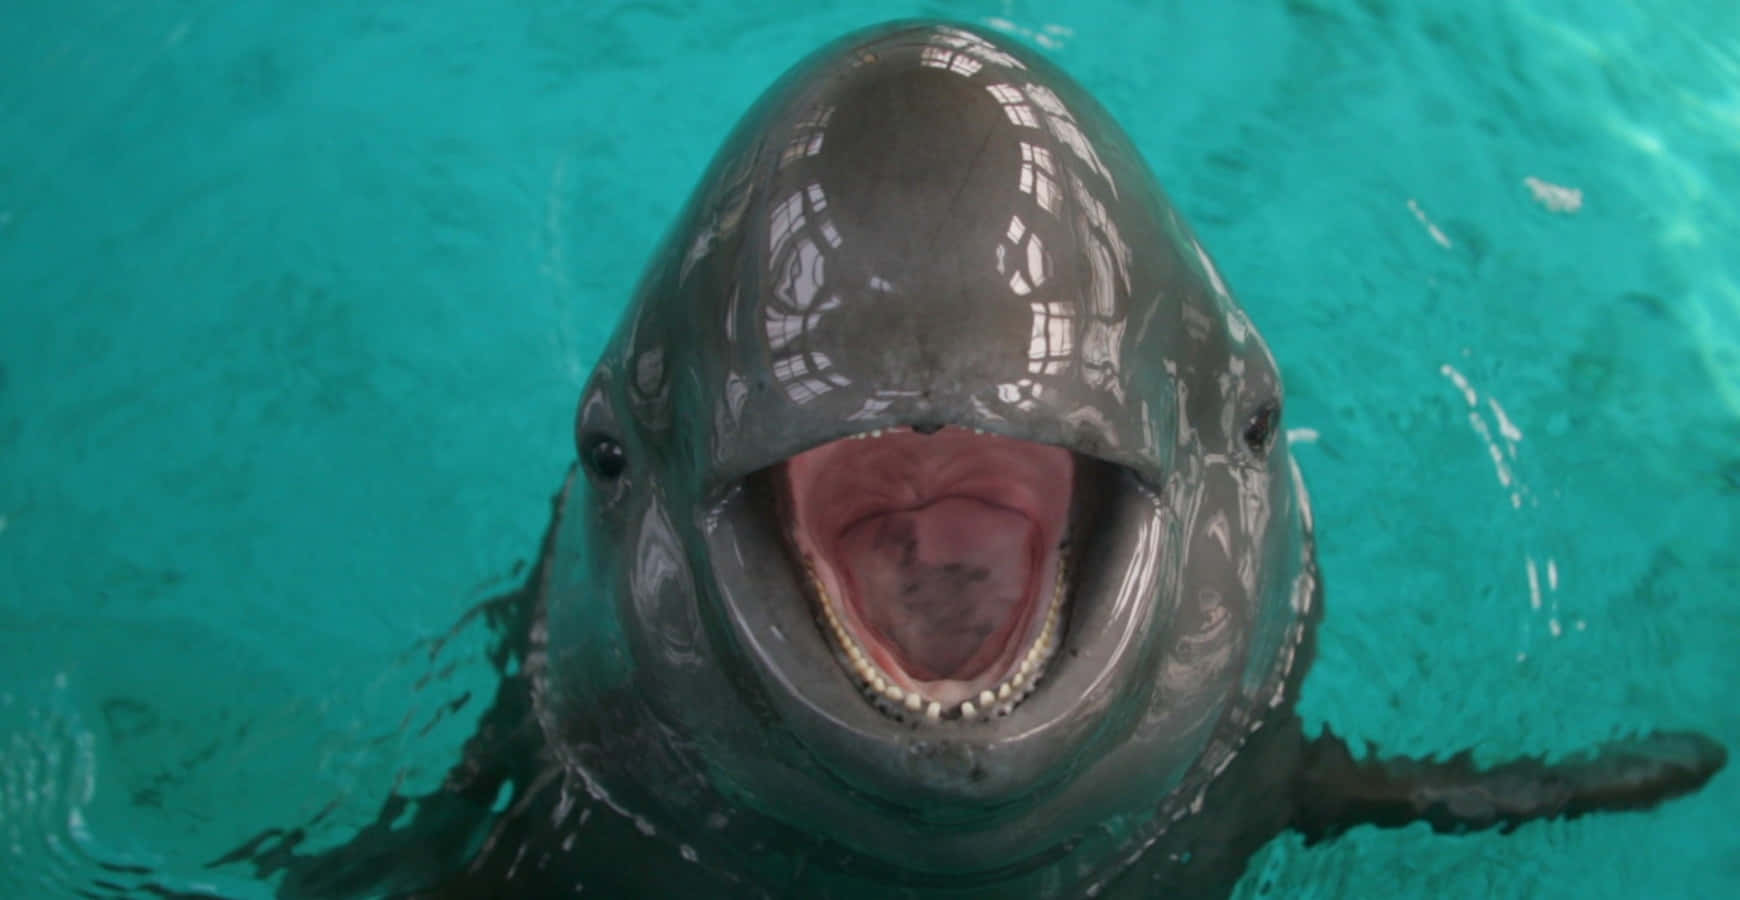 Smiling Porpoise Up Close.jpg Wallpaper